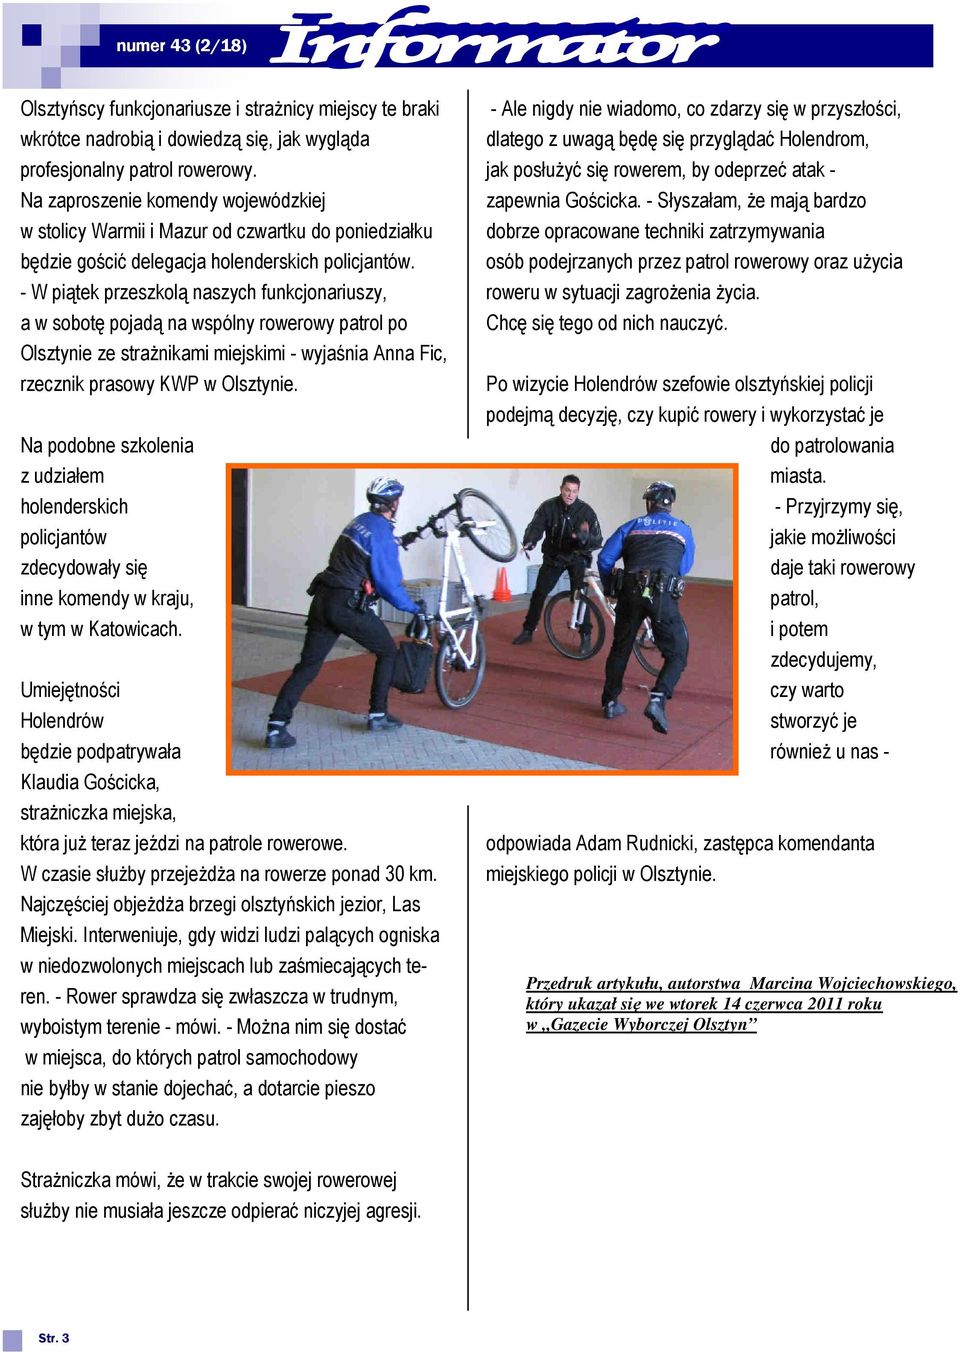 - W piątek przeszkolą naszych funkcjonariuszy, a w sobotę pojadą na wspólny rowerowy patrol po Olsztynie ze strażnikami miejskimi - wyjaśnia Anna Fic, rzecznik prasowy KWP w Olsztynie.